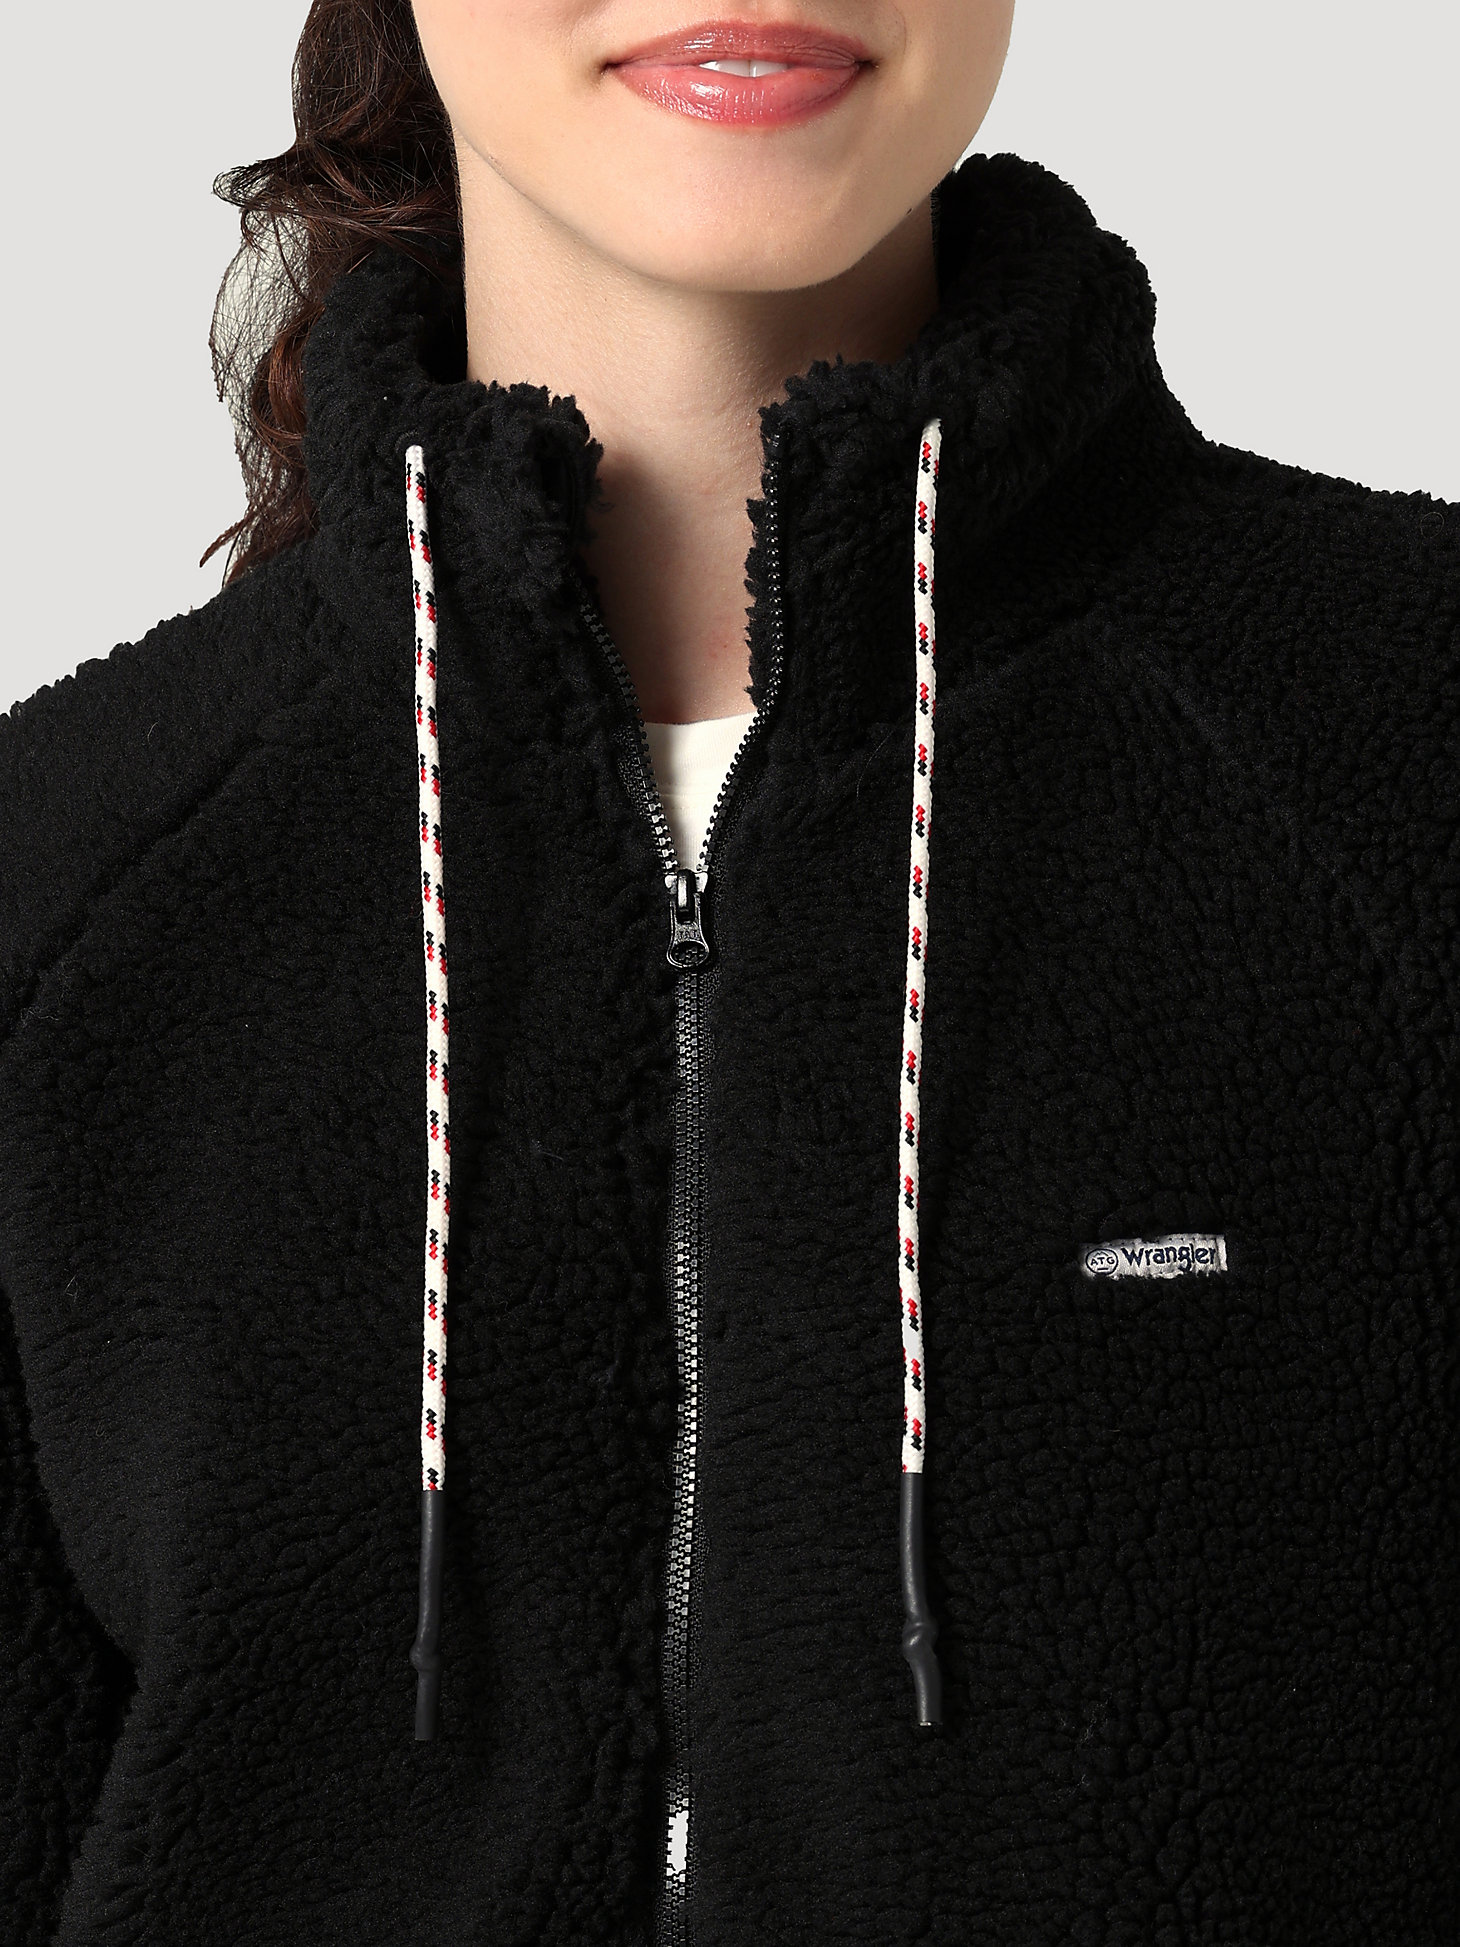 ATG By Wrangler™ Women's Sherpa Fleece Jacket in Jet Black alternative view 2